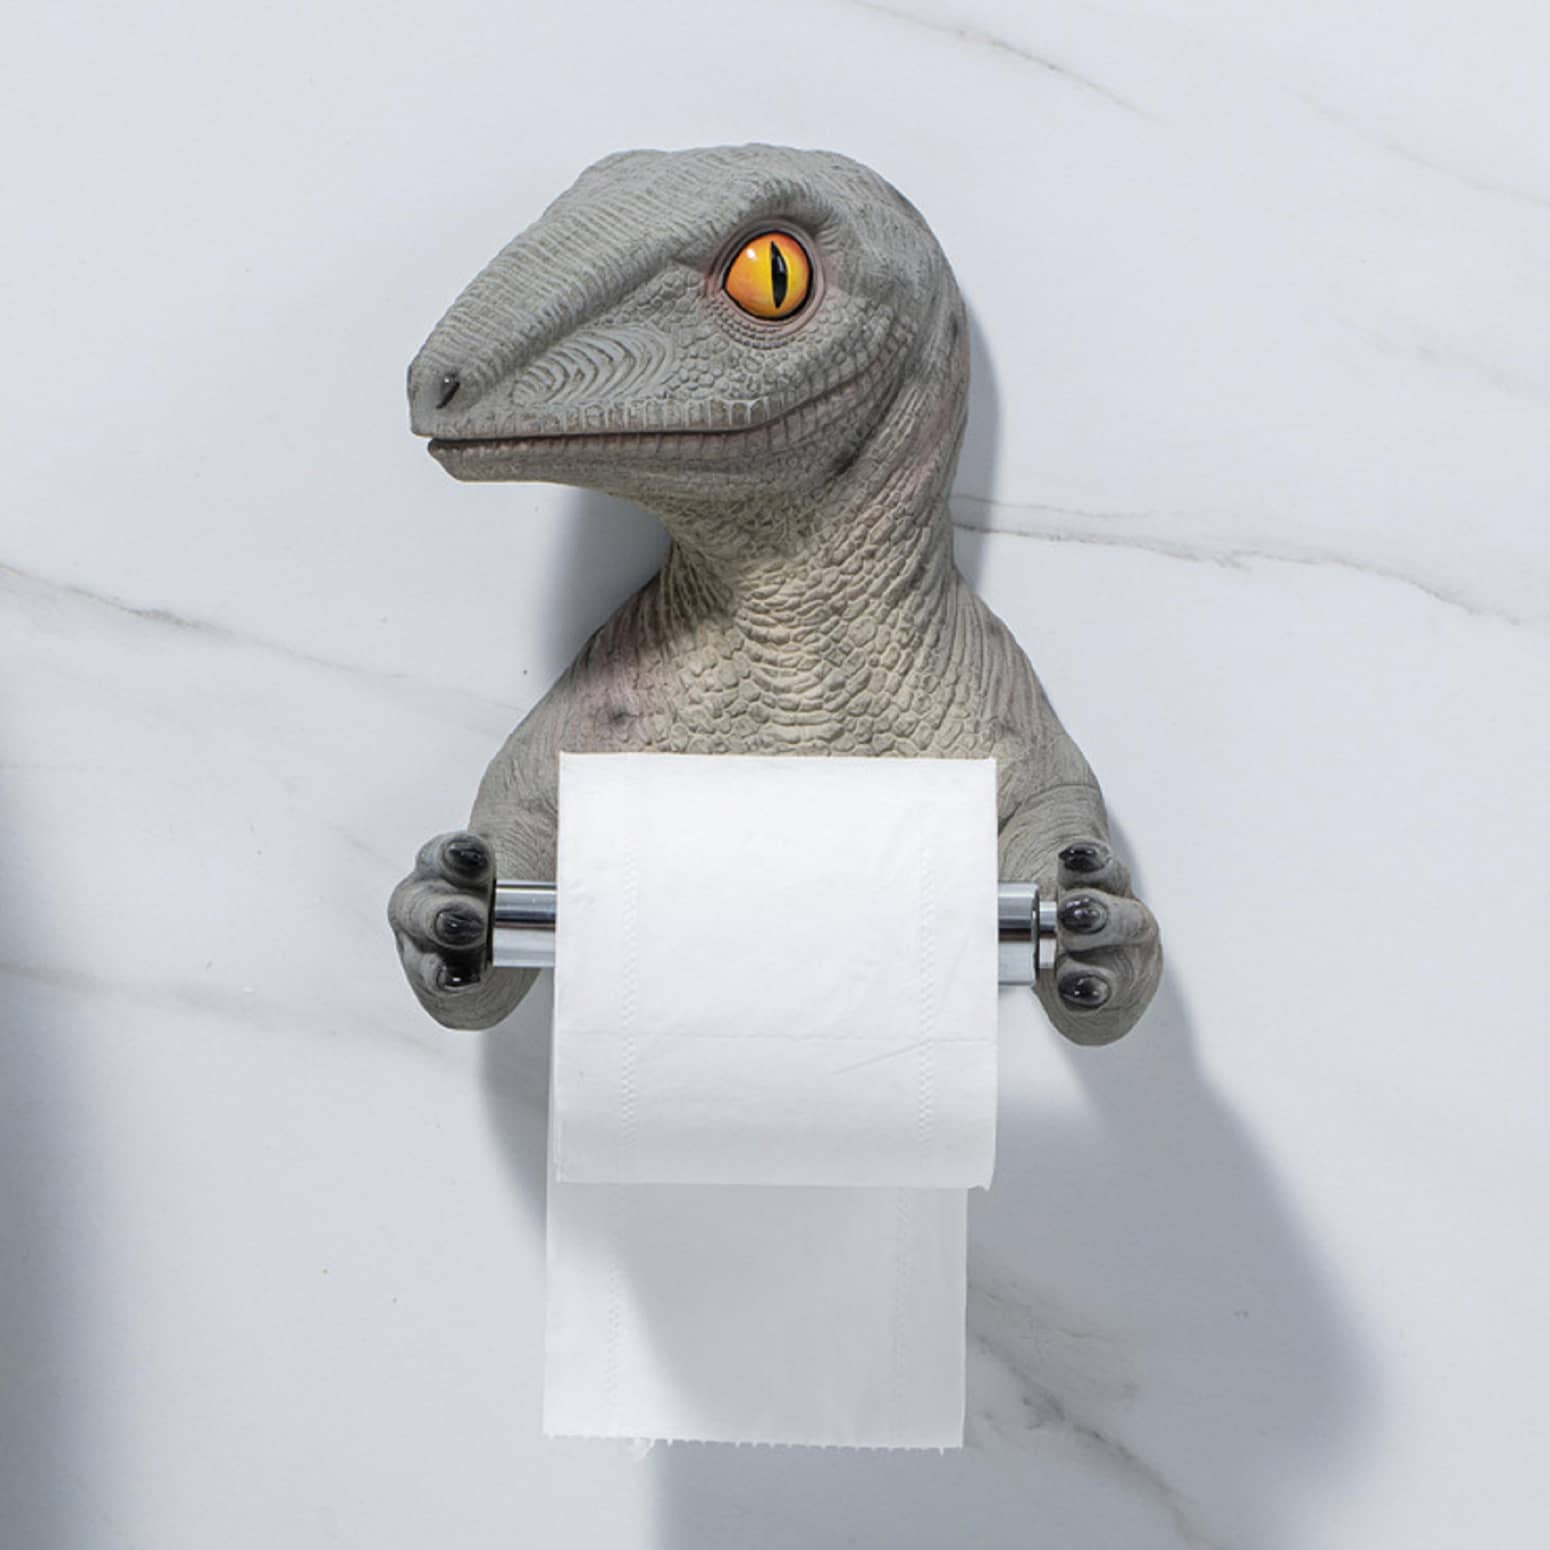 Velociraptor Toilet Paper Holder